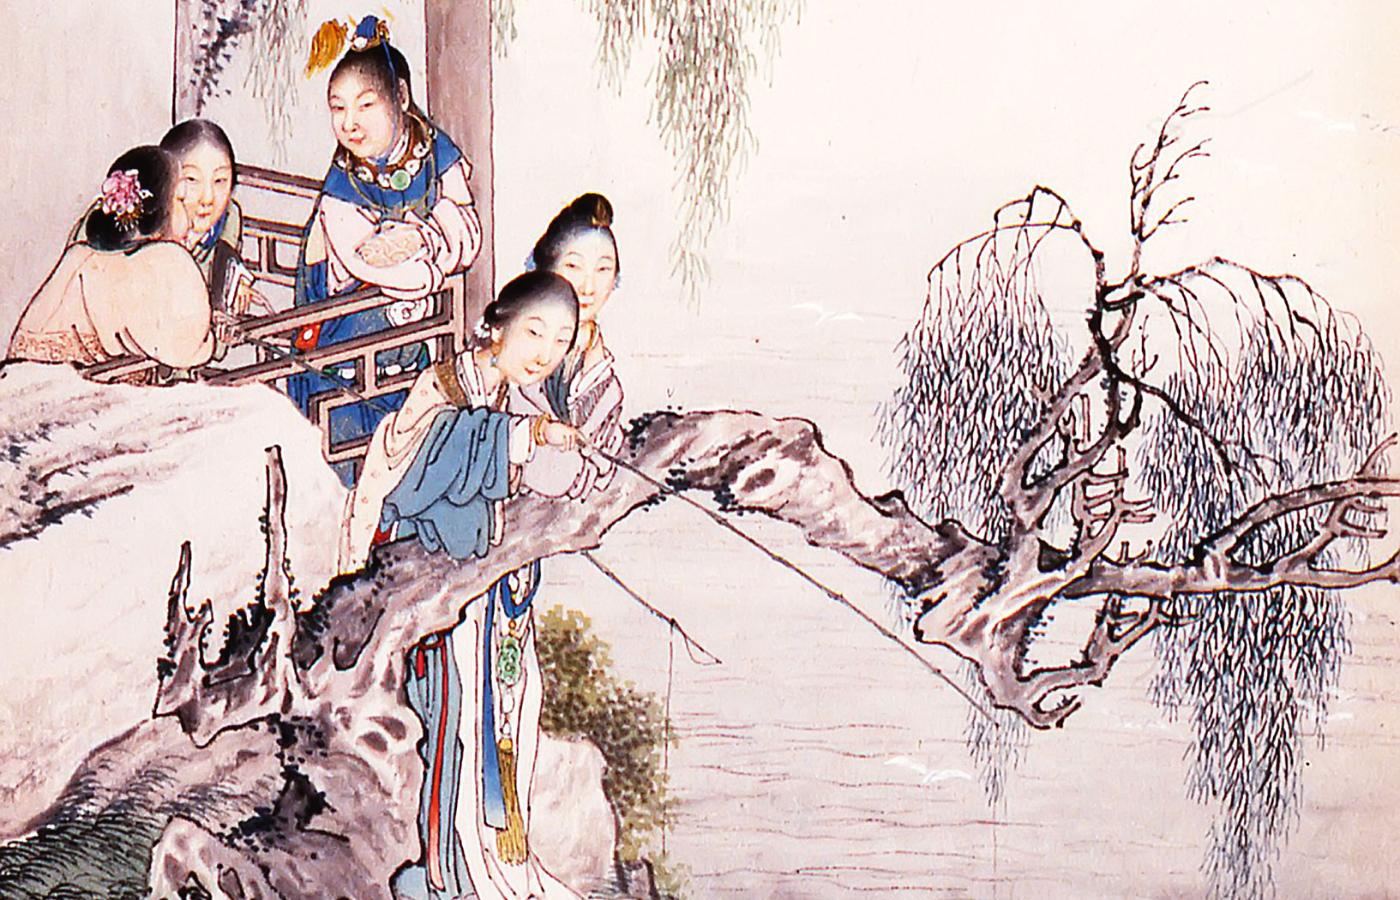 Ilustracja do powieści „Sen czerwonego pawilonu” (Hongloumeng)  Cao Xueqina (ok. 1715–64). Autorem jest Qian Hui’an (1833–1911).